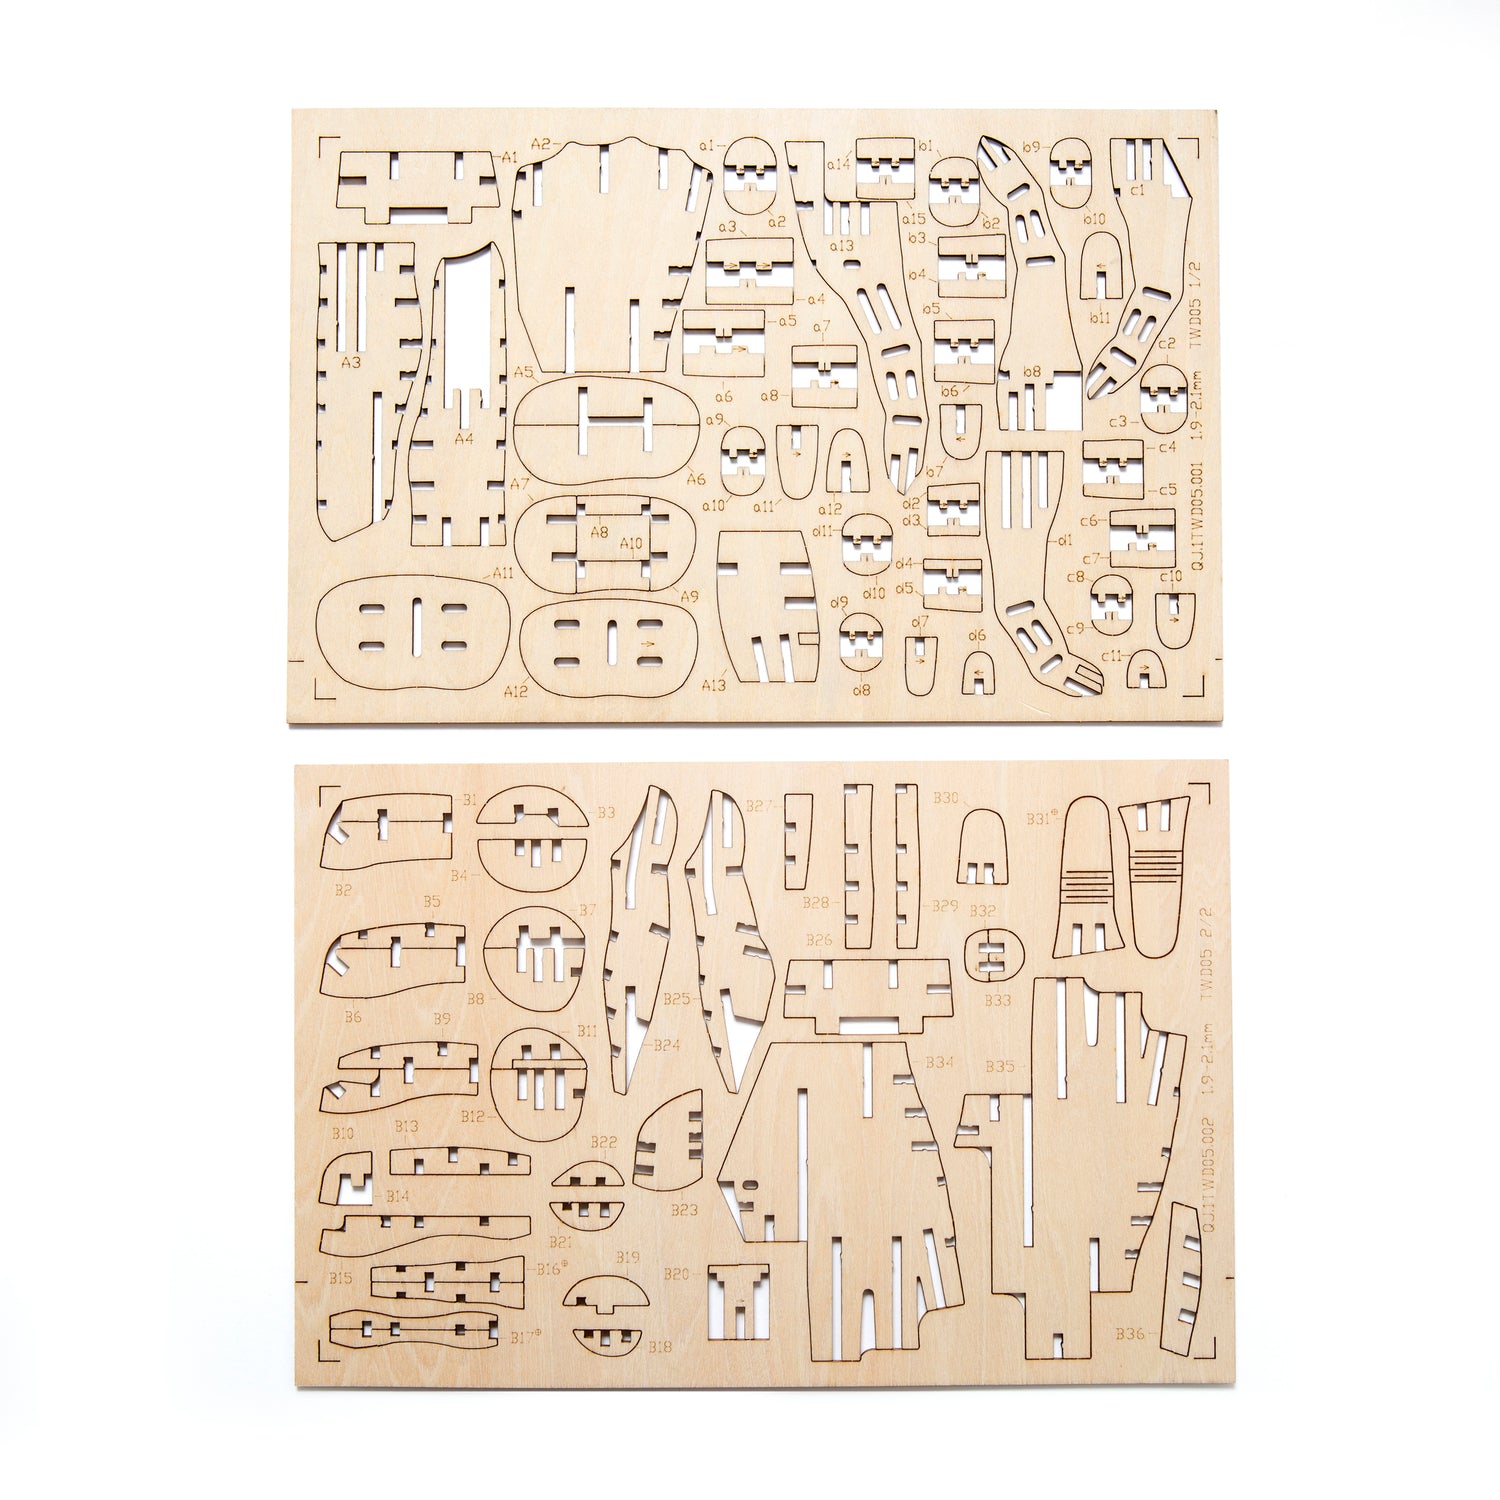 Dog 3D Wooden Puzzle – Kikkerland Design Inc